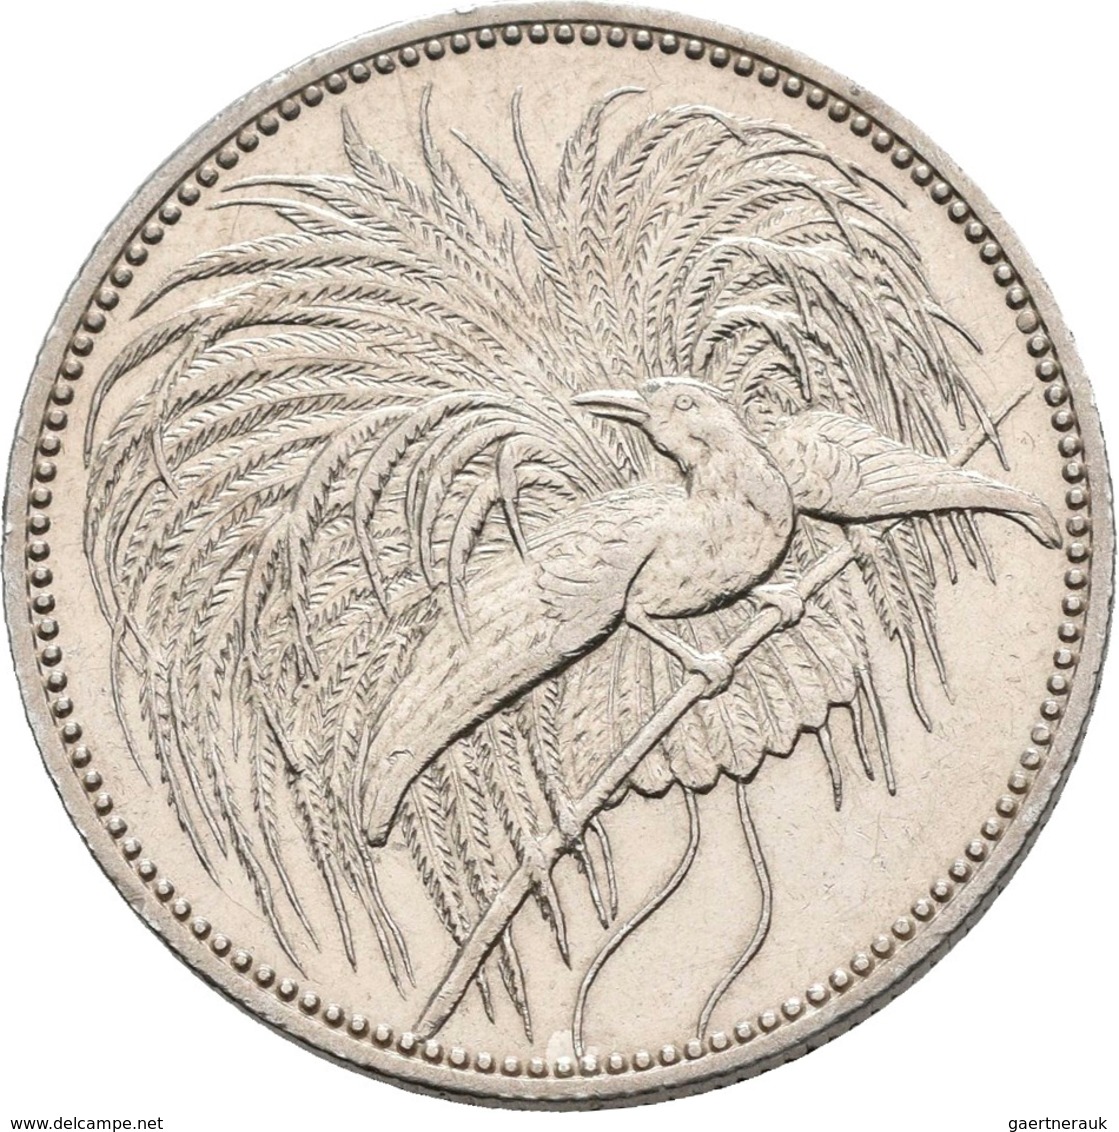 Deutsch-Neuguinea: 1 Neu-Guinea Mark 1894 A, Paradiesvogel, Jaeger 705, Feine Kratzer, Sehr Schön - - Deutsch-Neuguinea